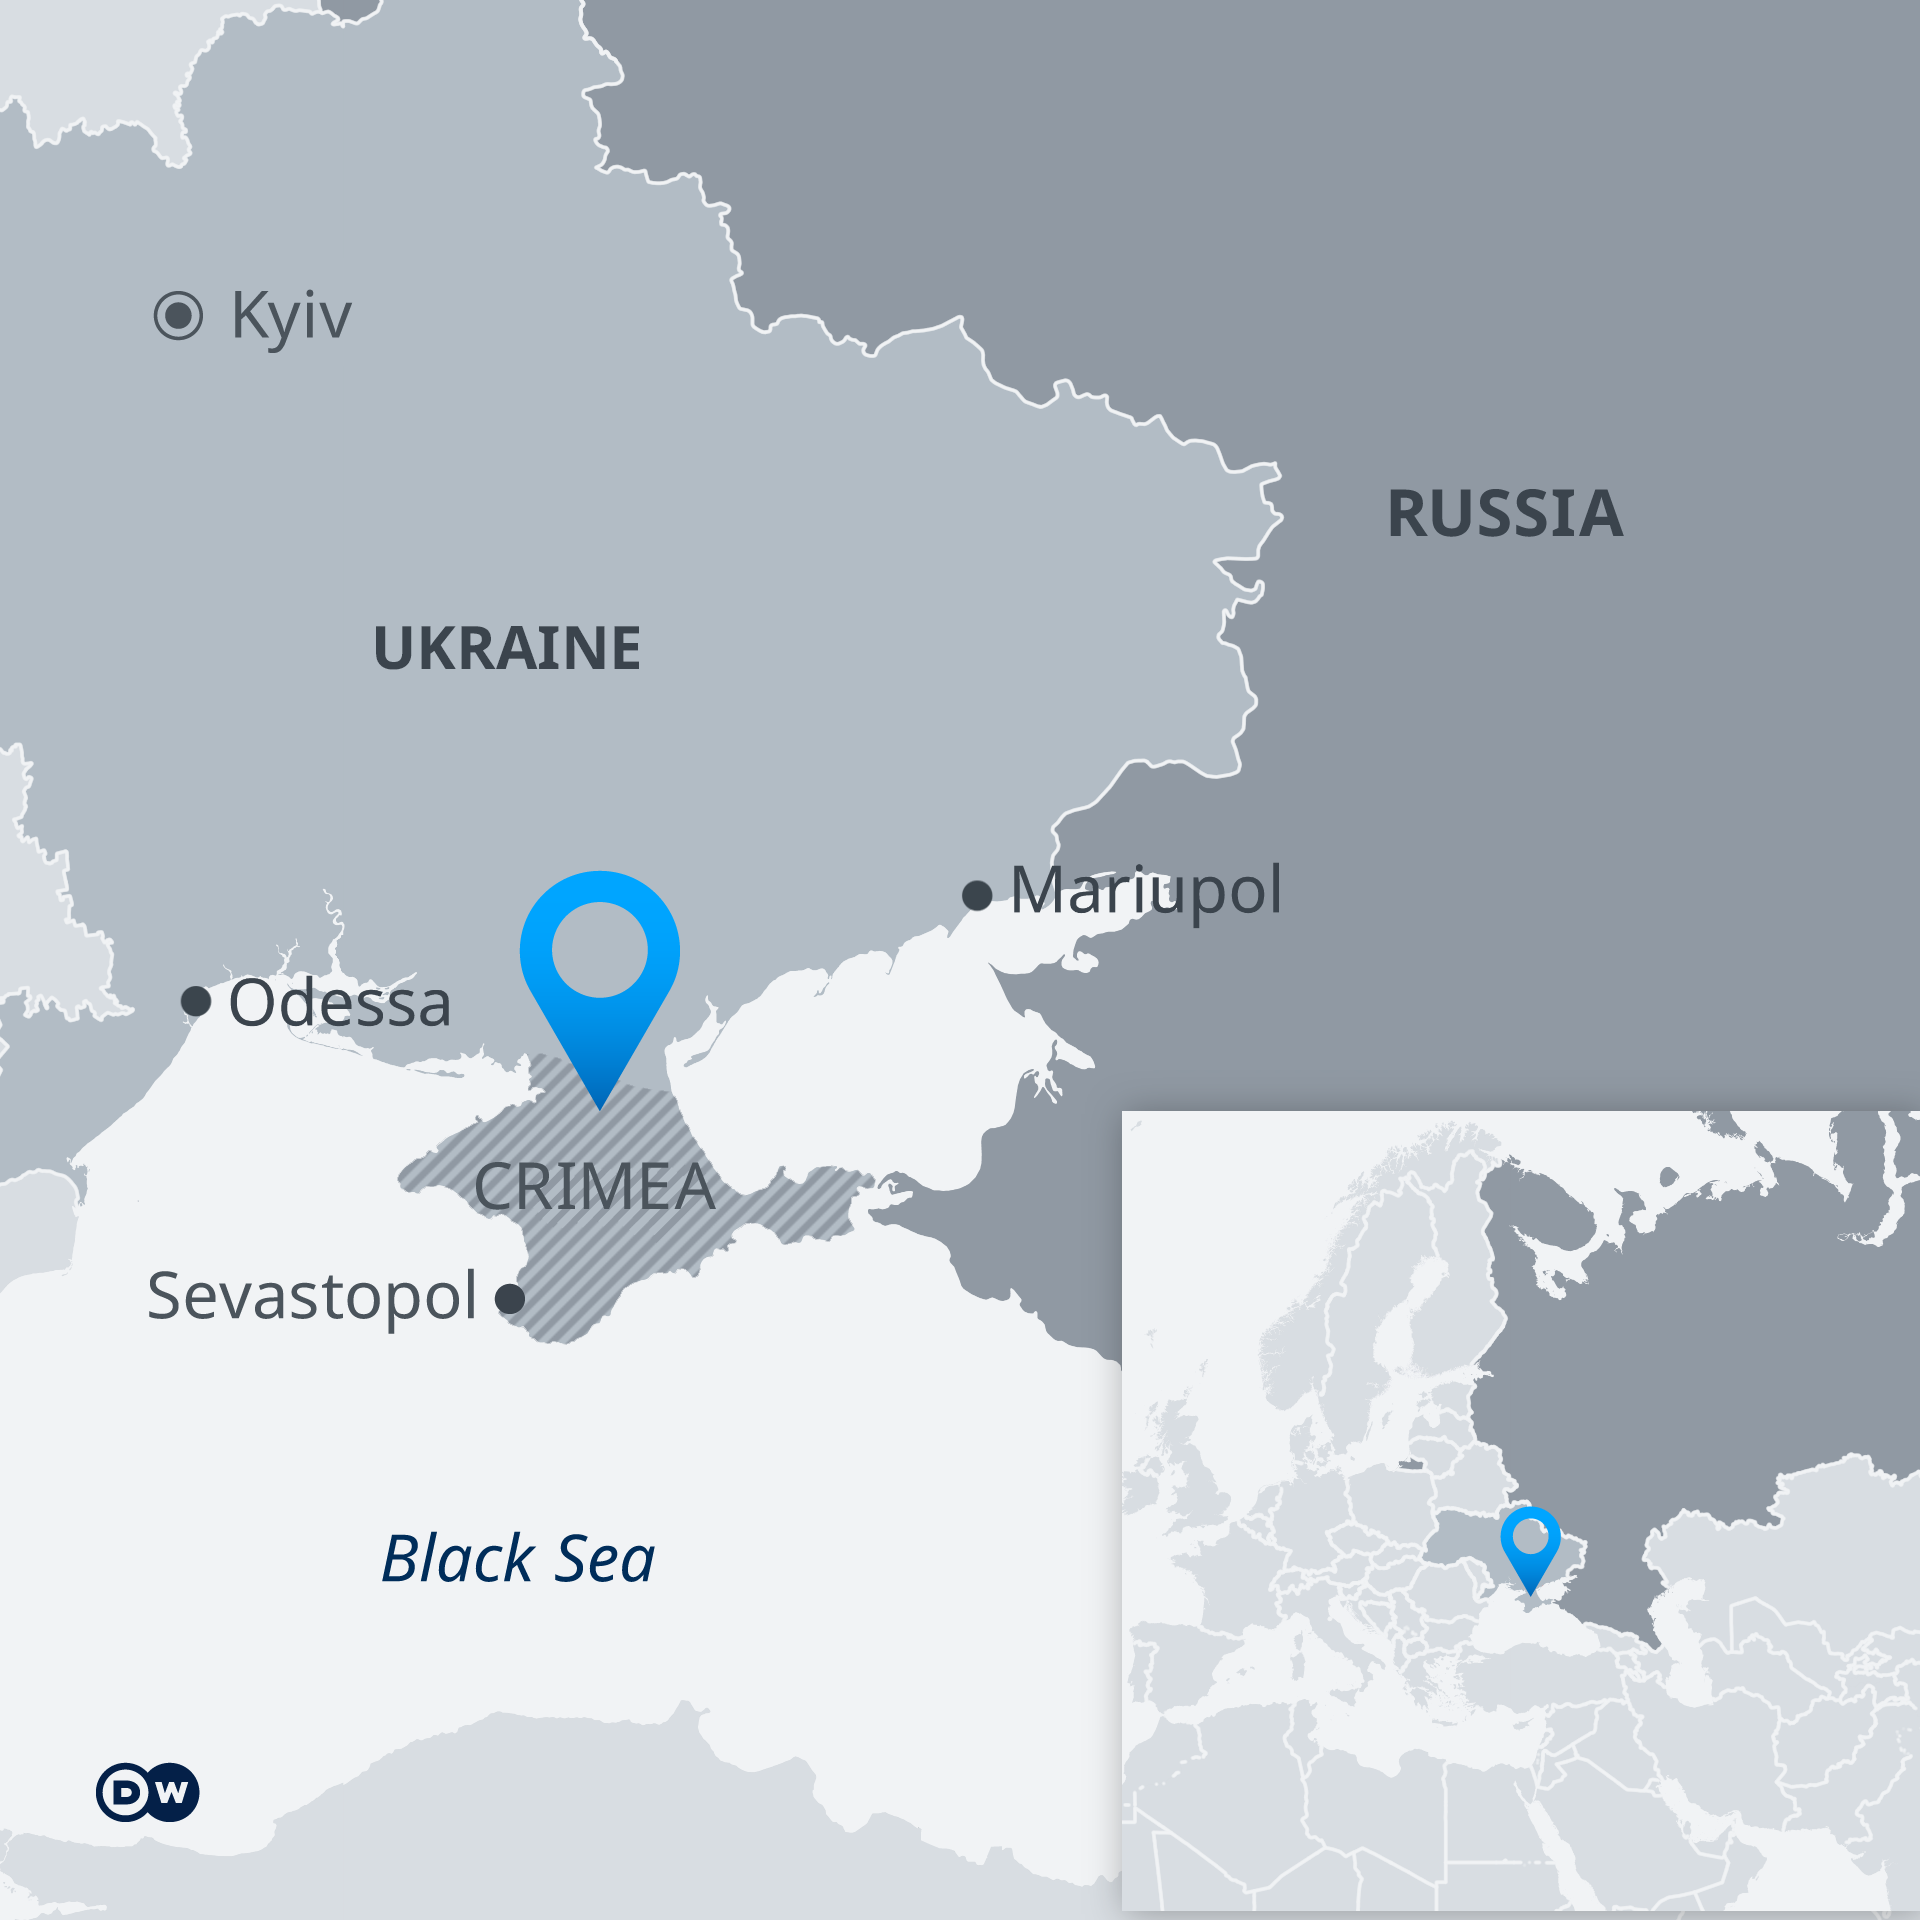 Kapal perang rusia bombardir mariupol ukraina dari laut azov